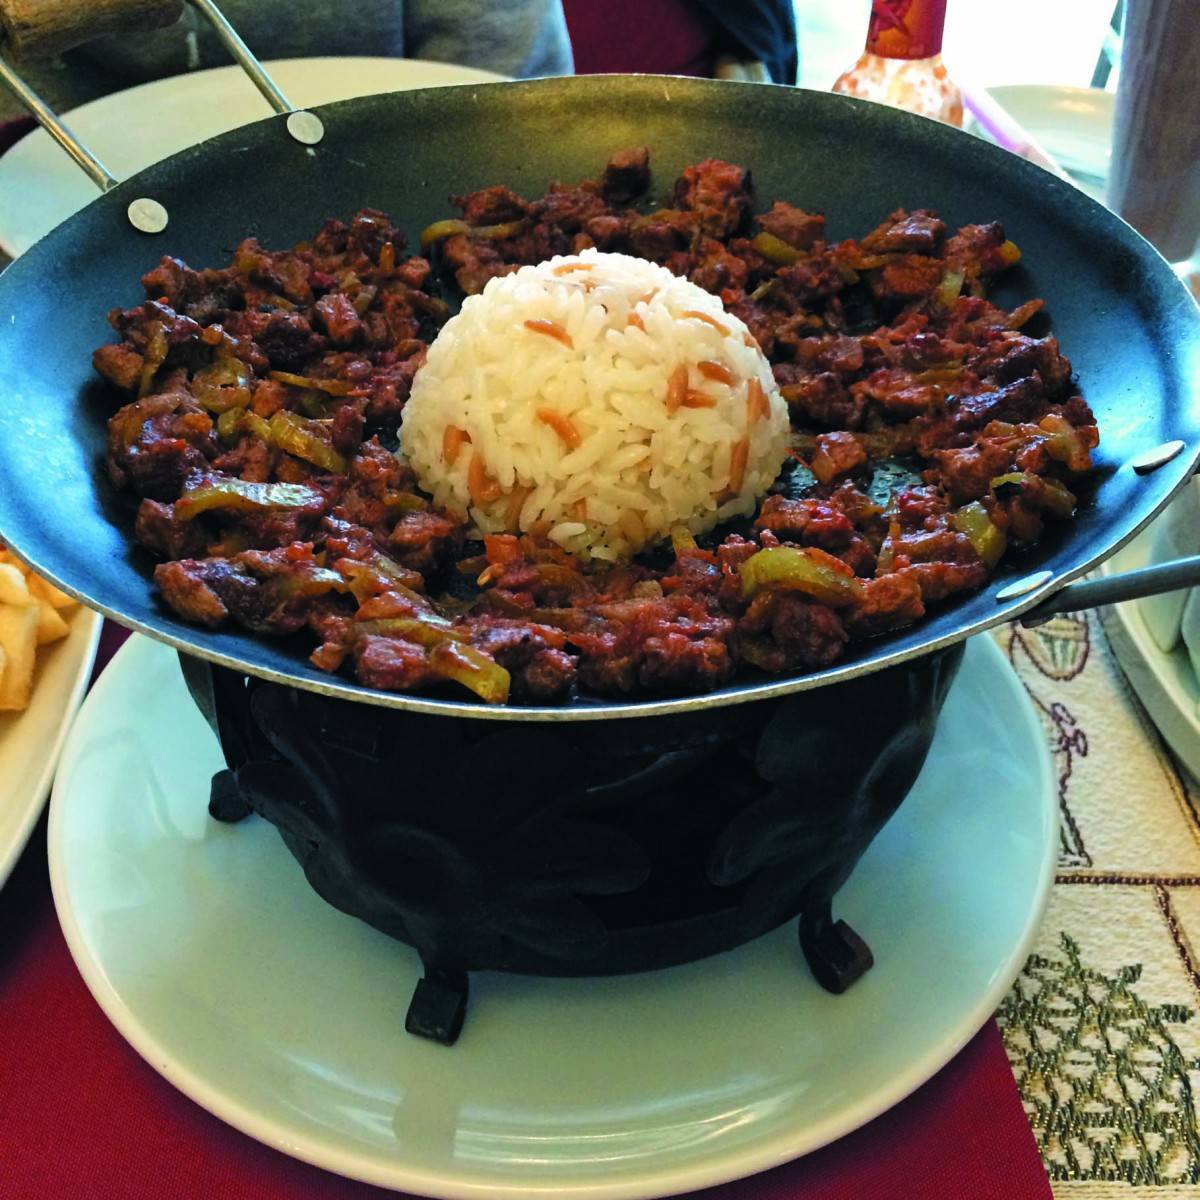 土耳其 鐵鍋牛肉 TL20/HK$61 在當地也很常見，以鐵鍋盛載用番茄、青椒炒過的牛 肉，味道較濃郁乾身。